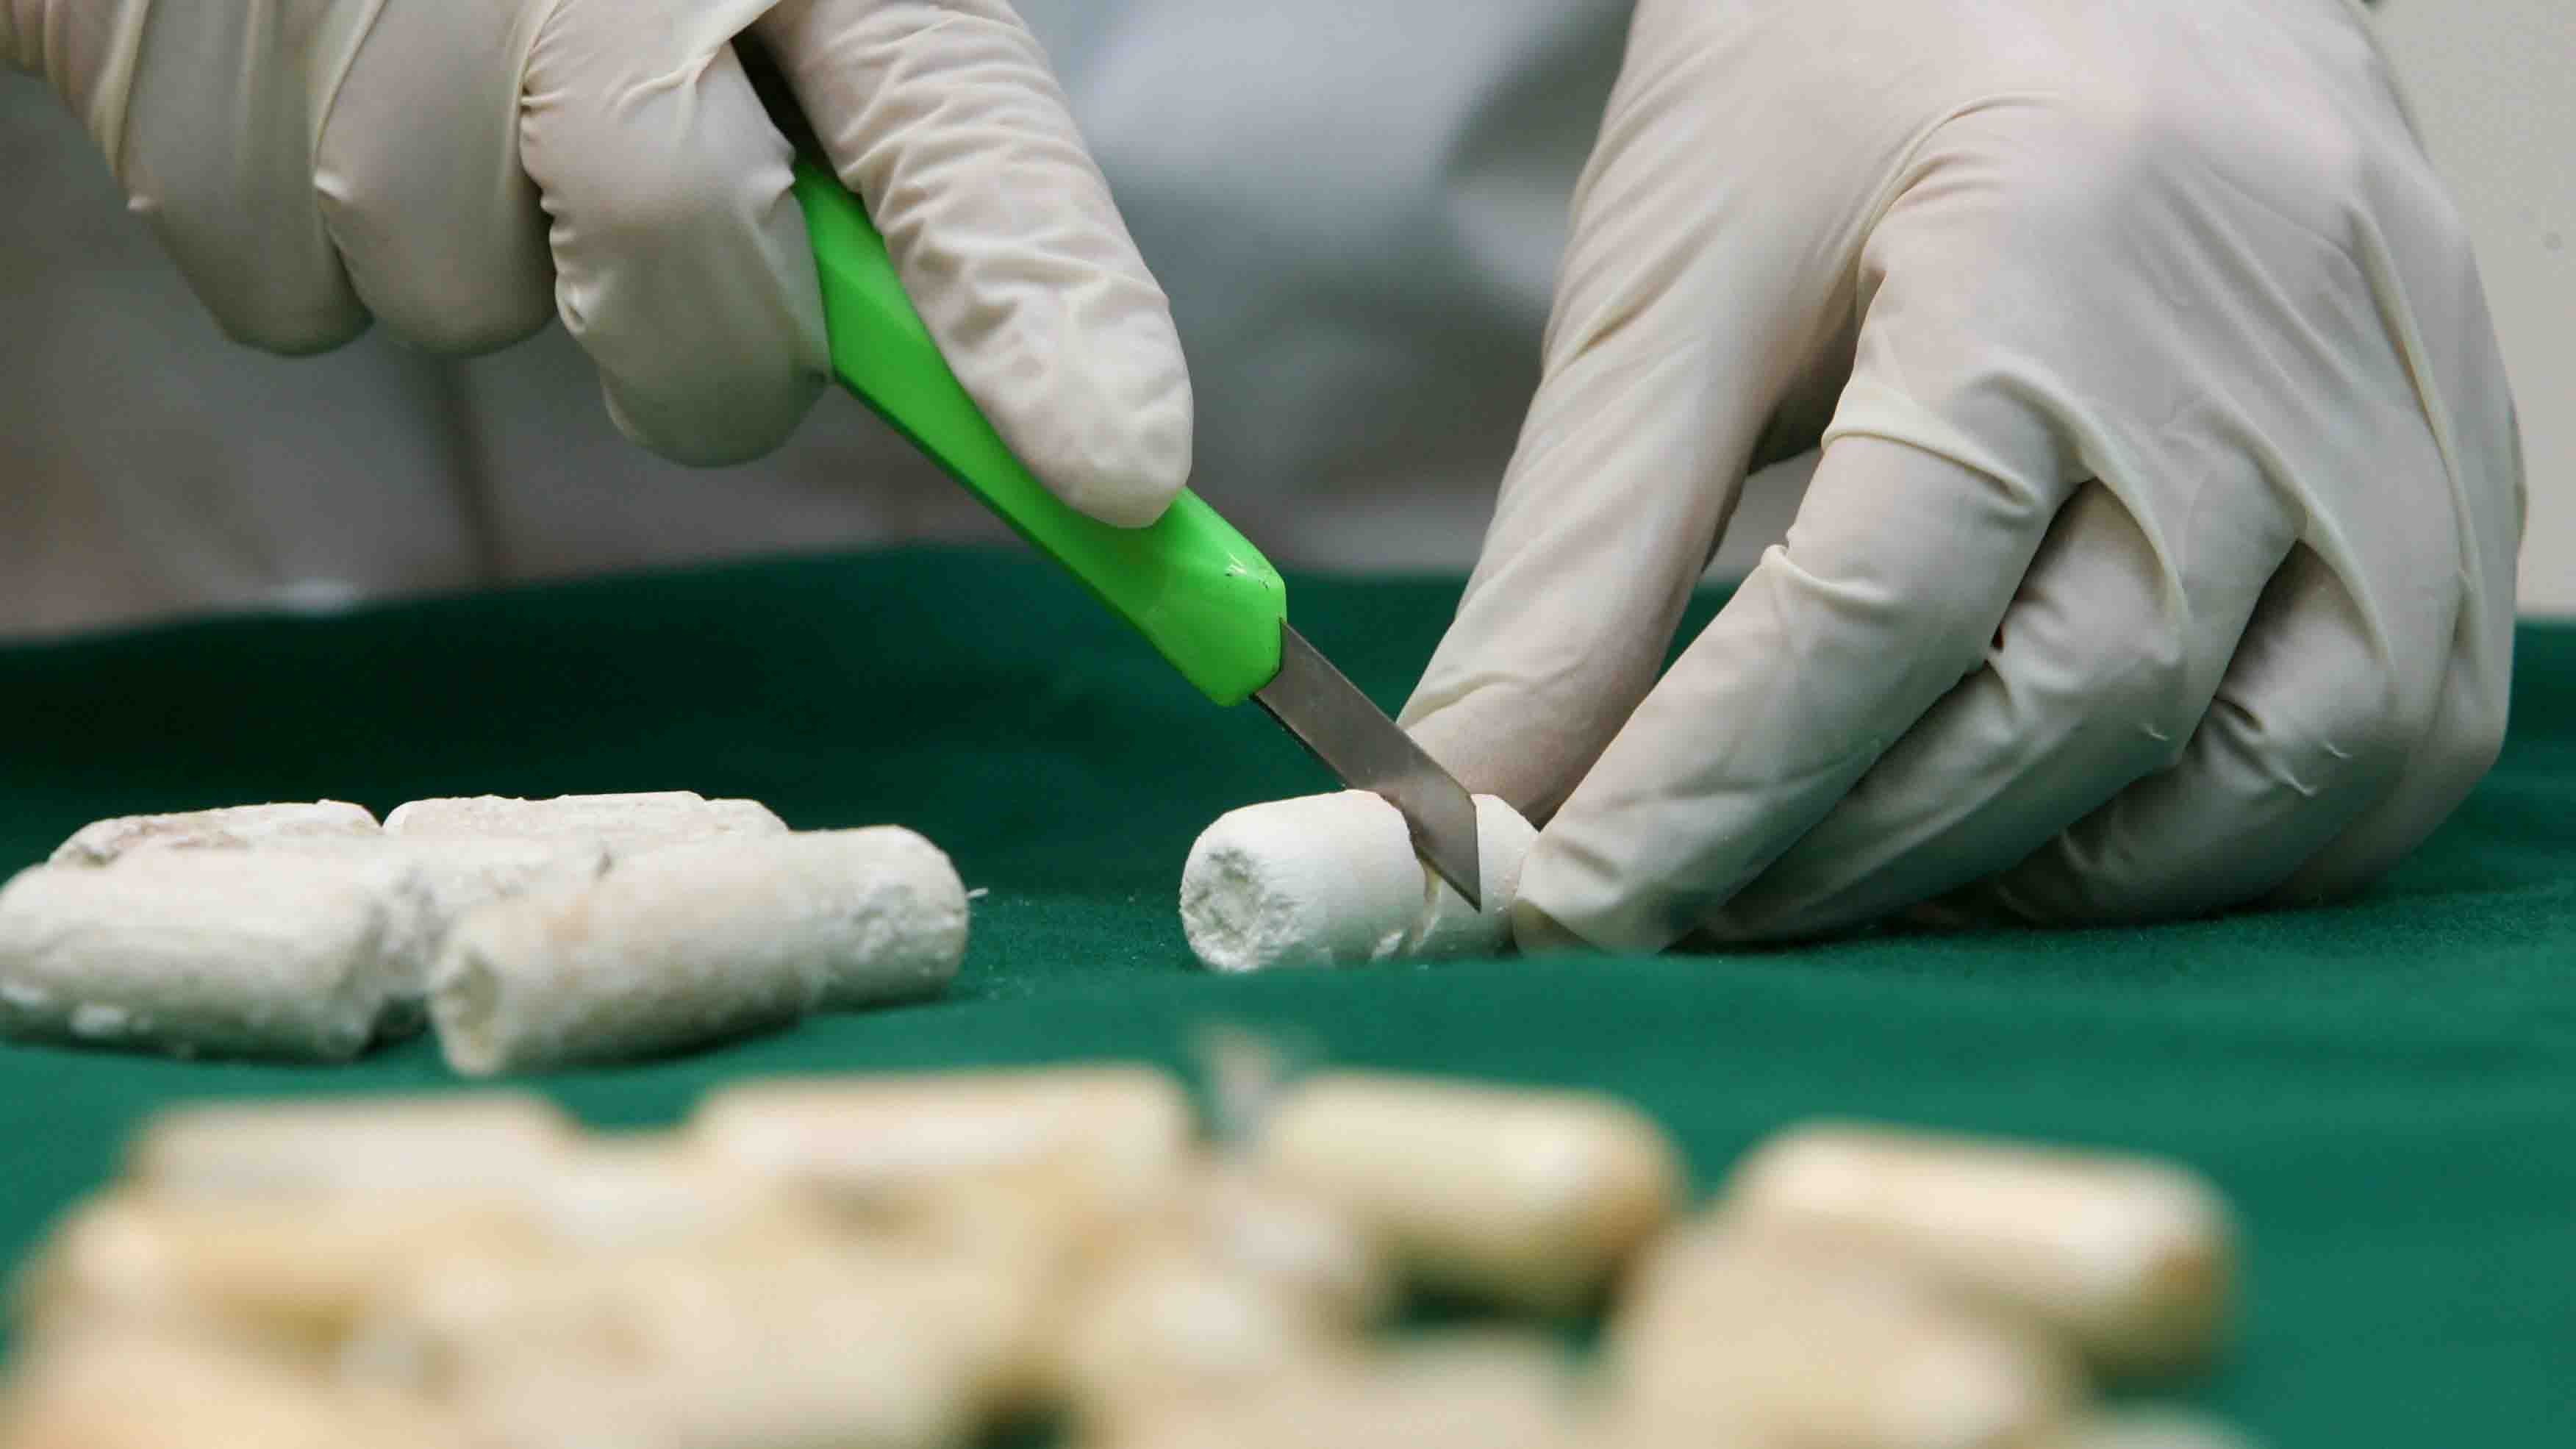 La cocaína venía oculta en ocho neumáticos de gandolas que entró al país desde Colombia con destino hacia las islas del Caribe y Europa